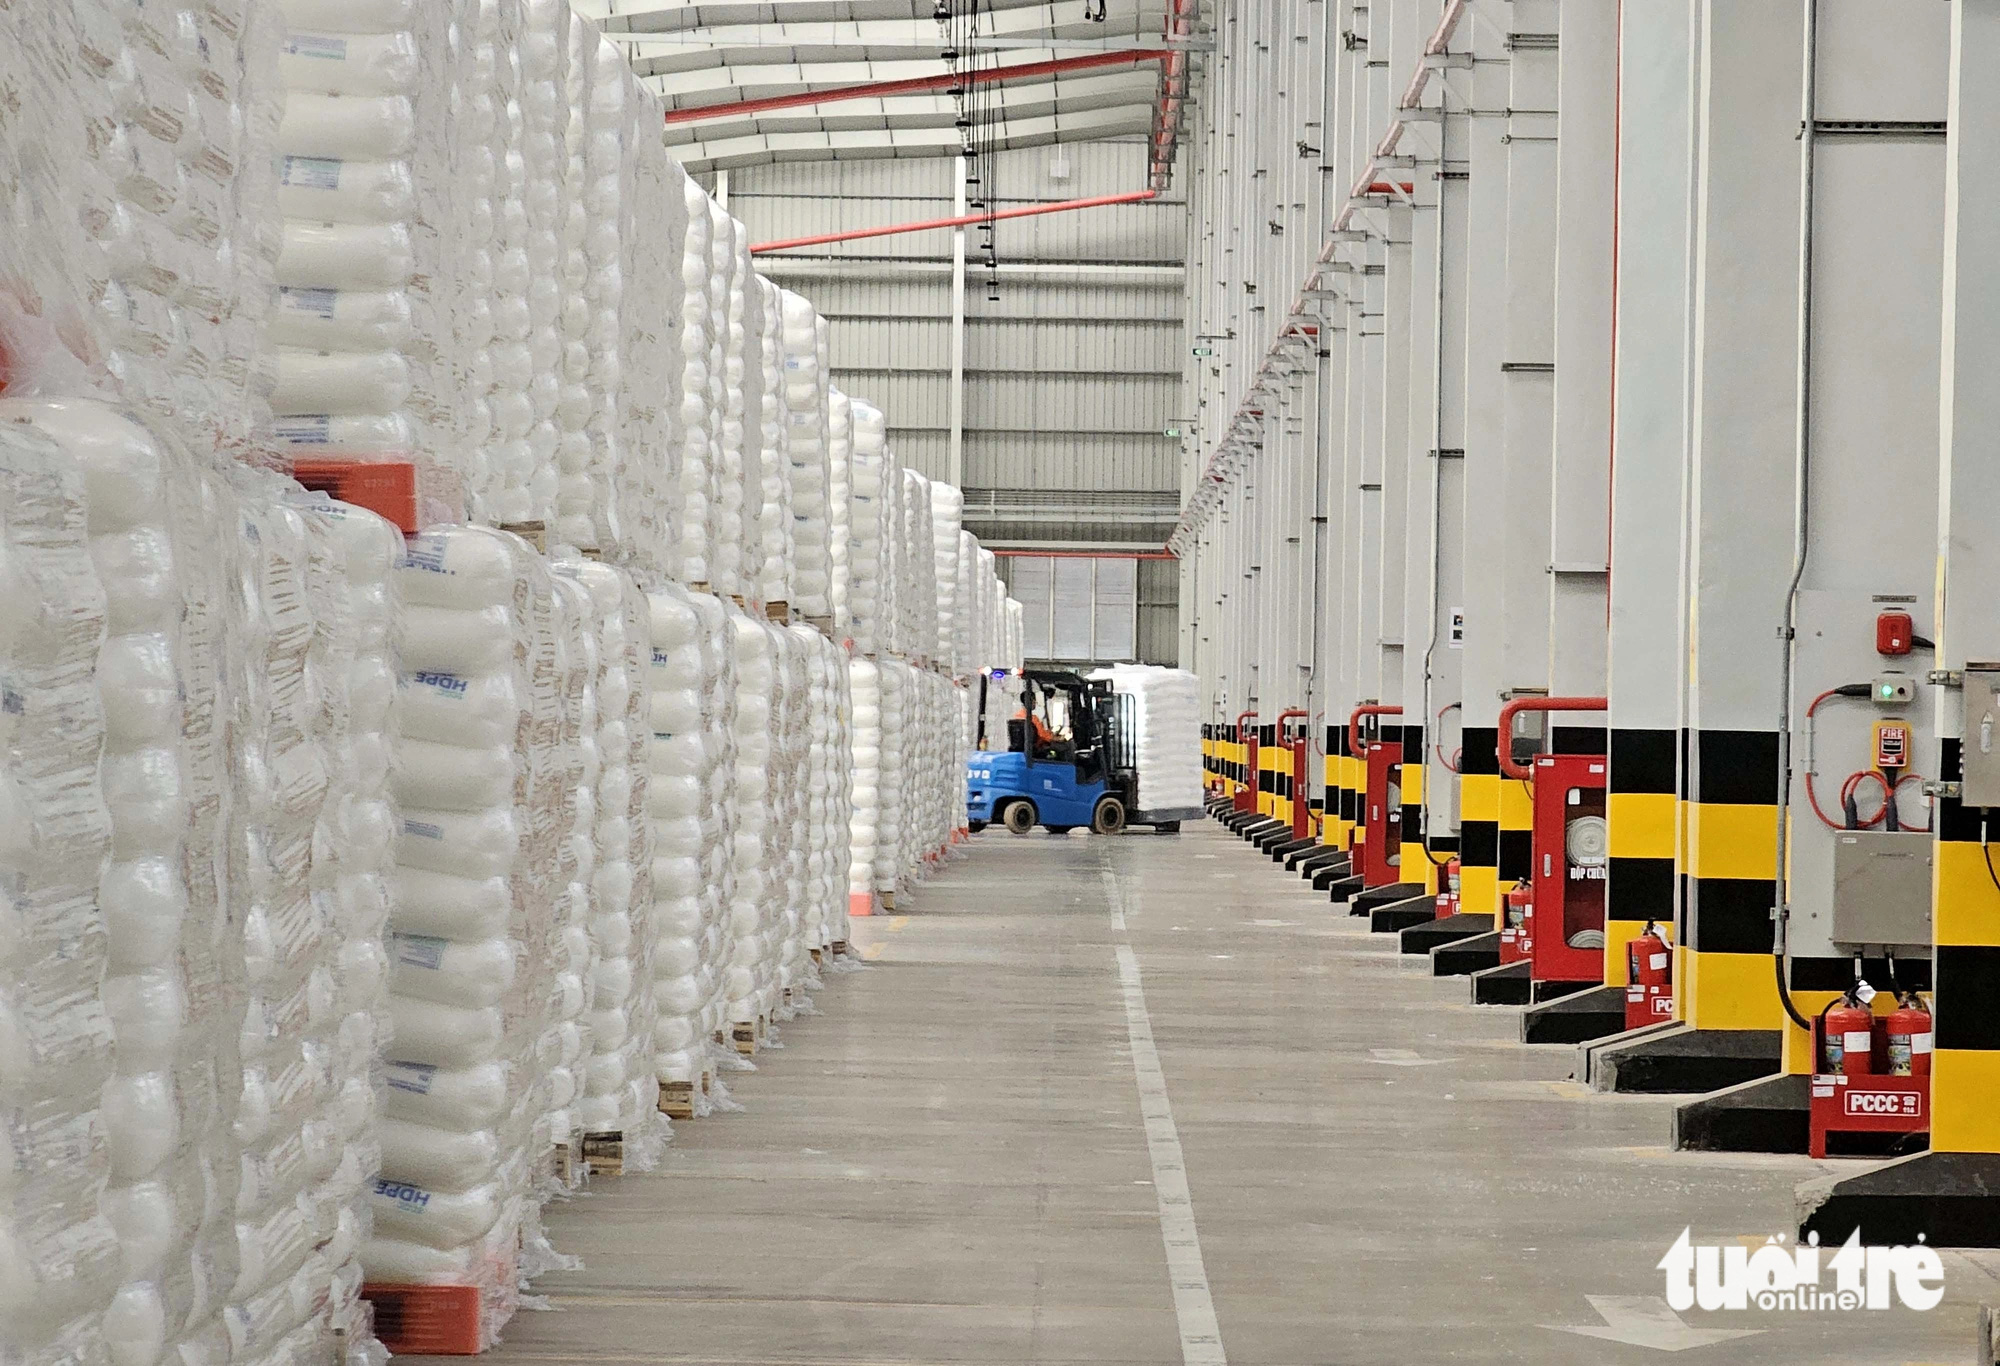 Các sản phẩm ra lò được đóng gói tự động và được vận chuyển lên xe container. Khi vận hành chính thức, tổng công suất của tổ hợp lên đến 1,4 triệu tấn/năm